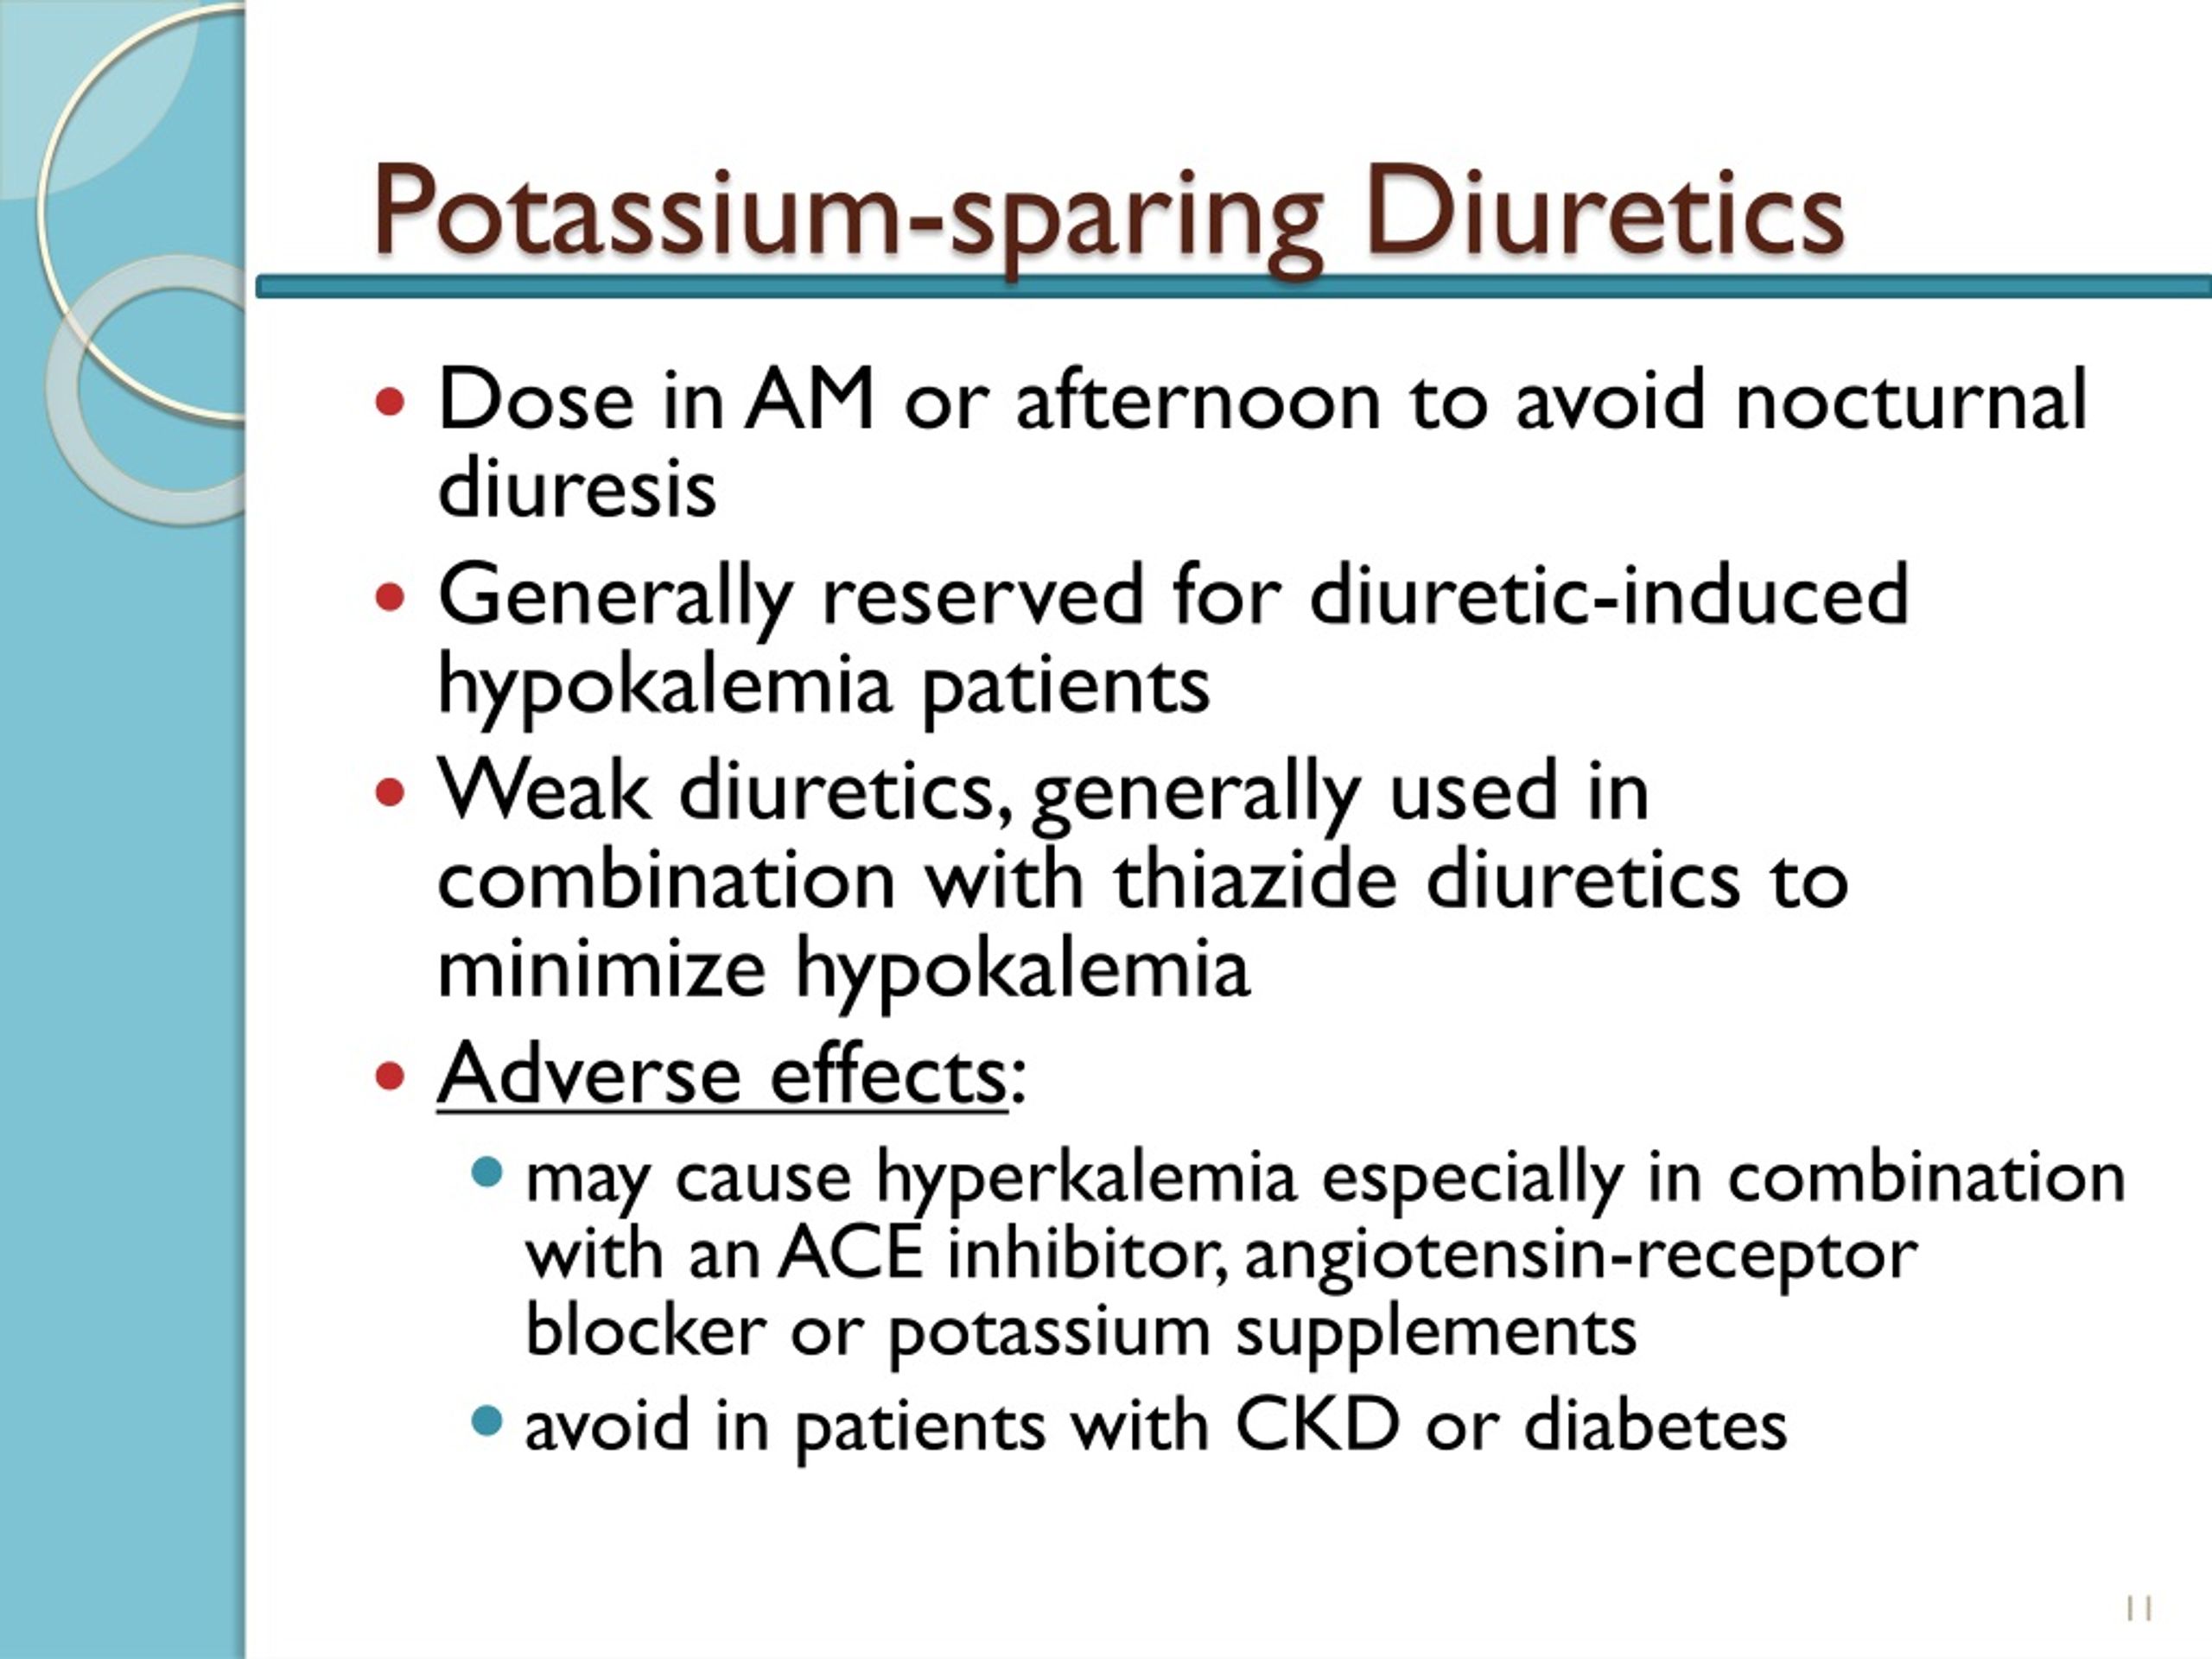 what drug is a potassium sparing diuretic